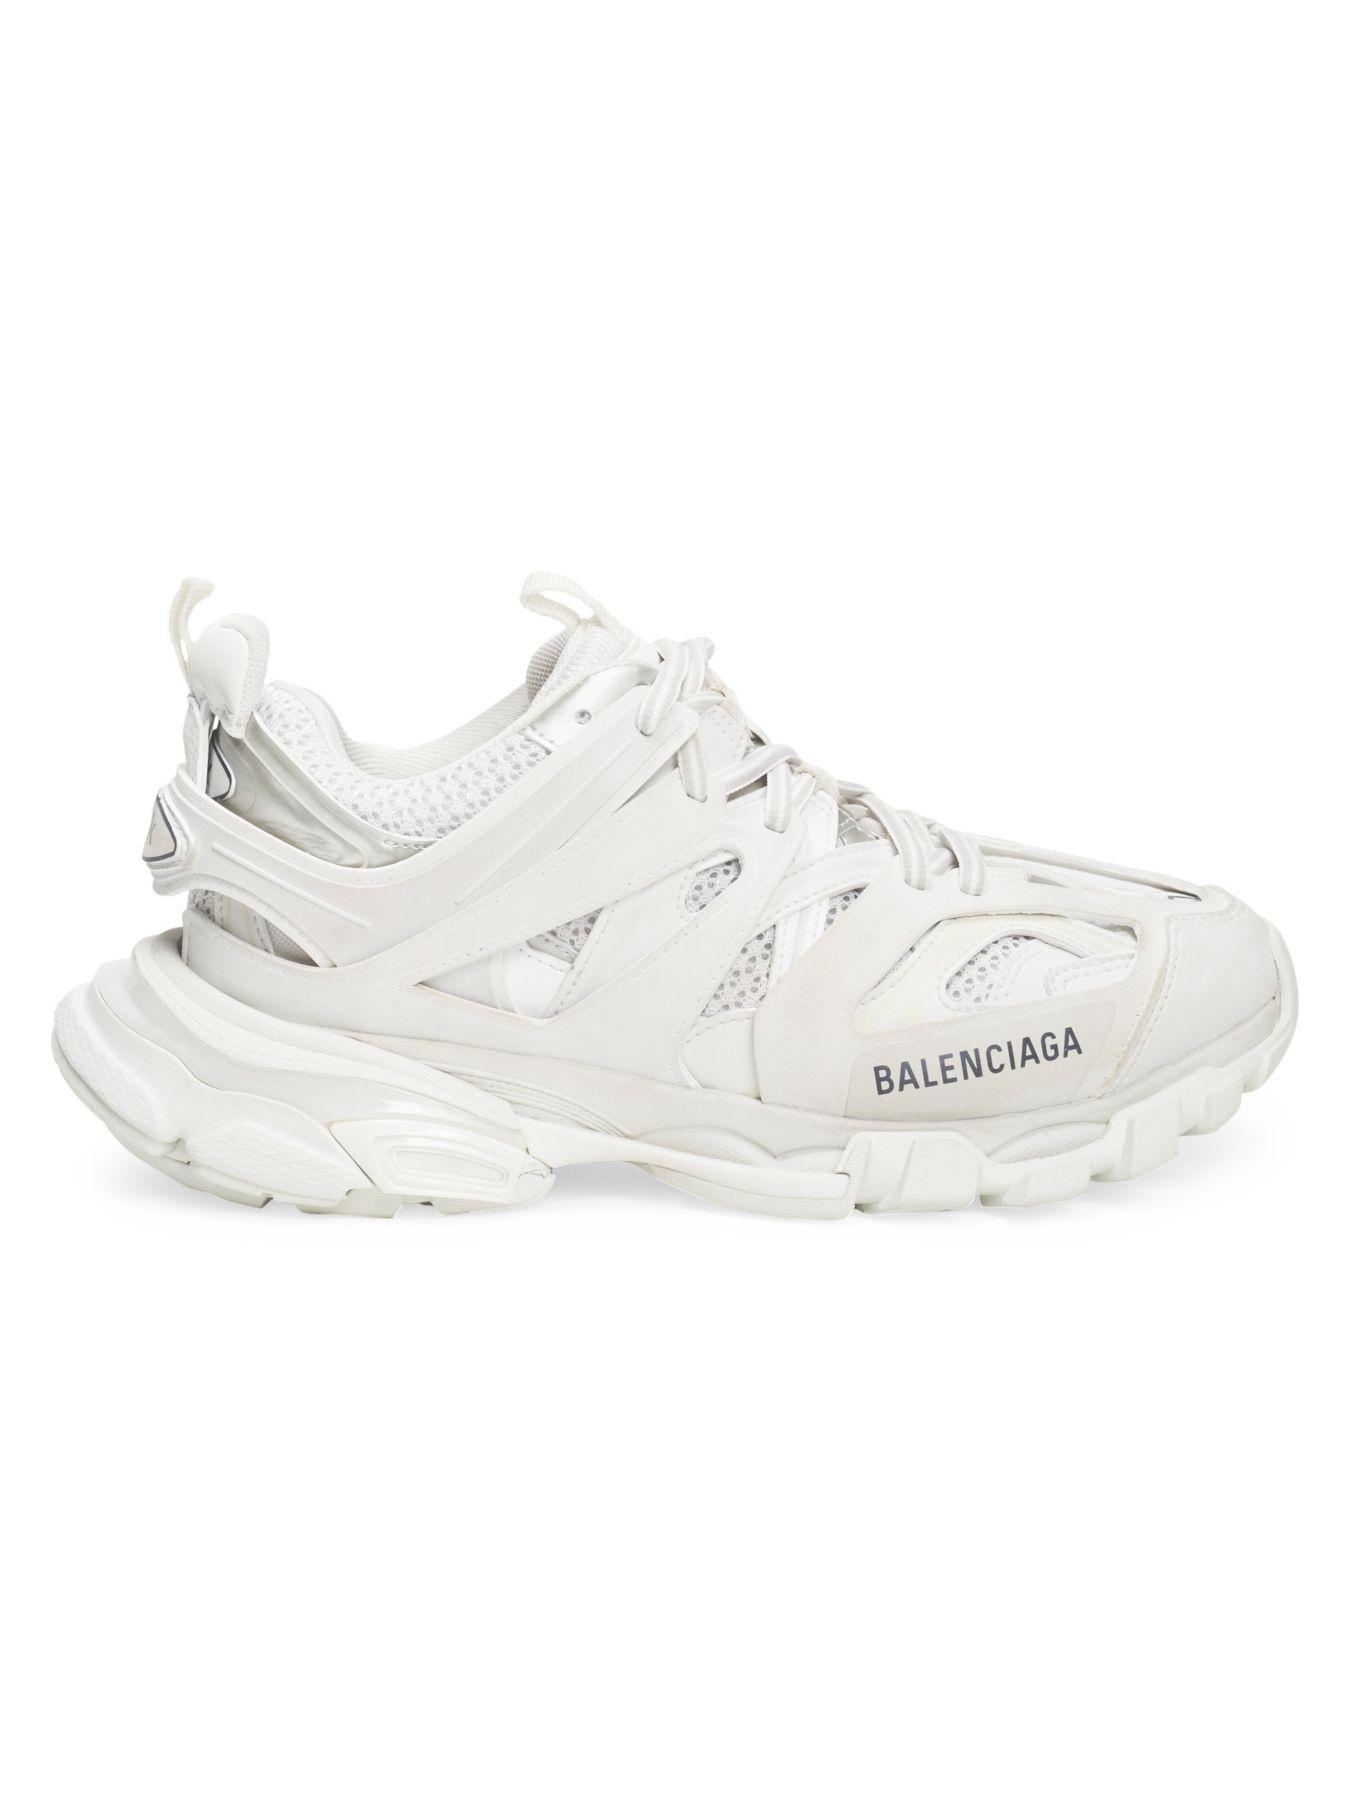 Balenciaga Led Track Sneakers in White Orange (White) - Lyst